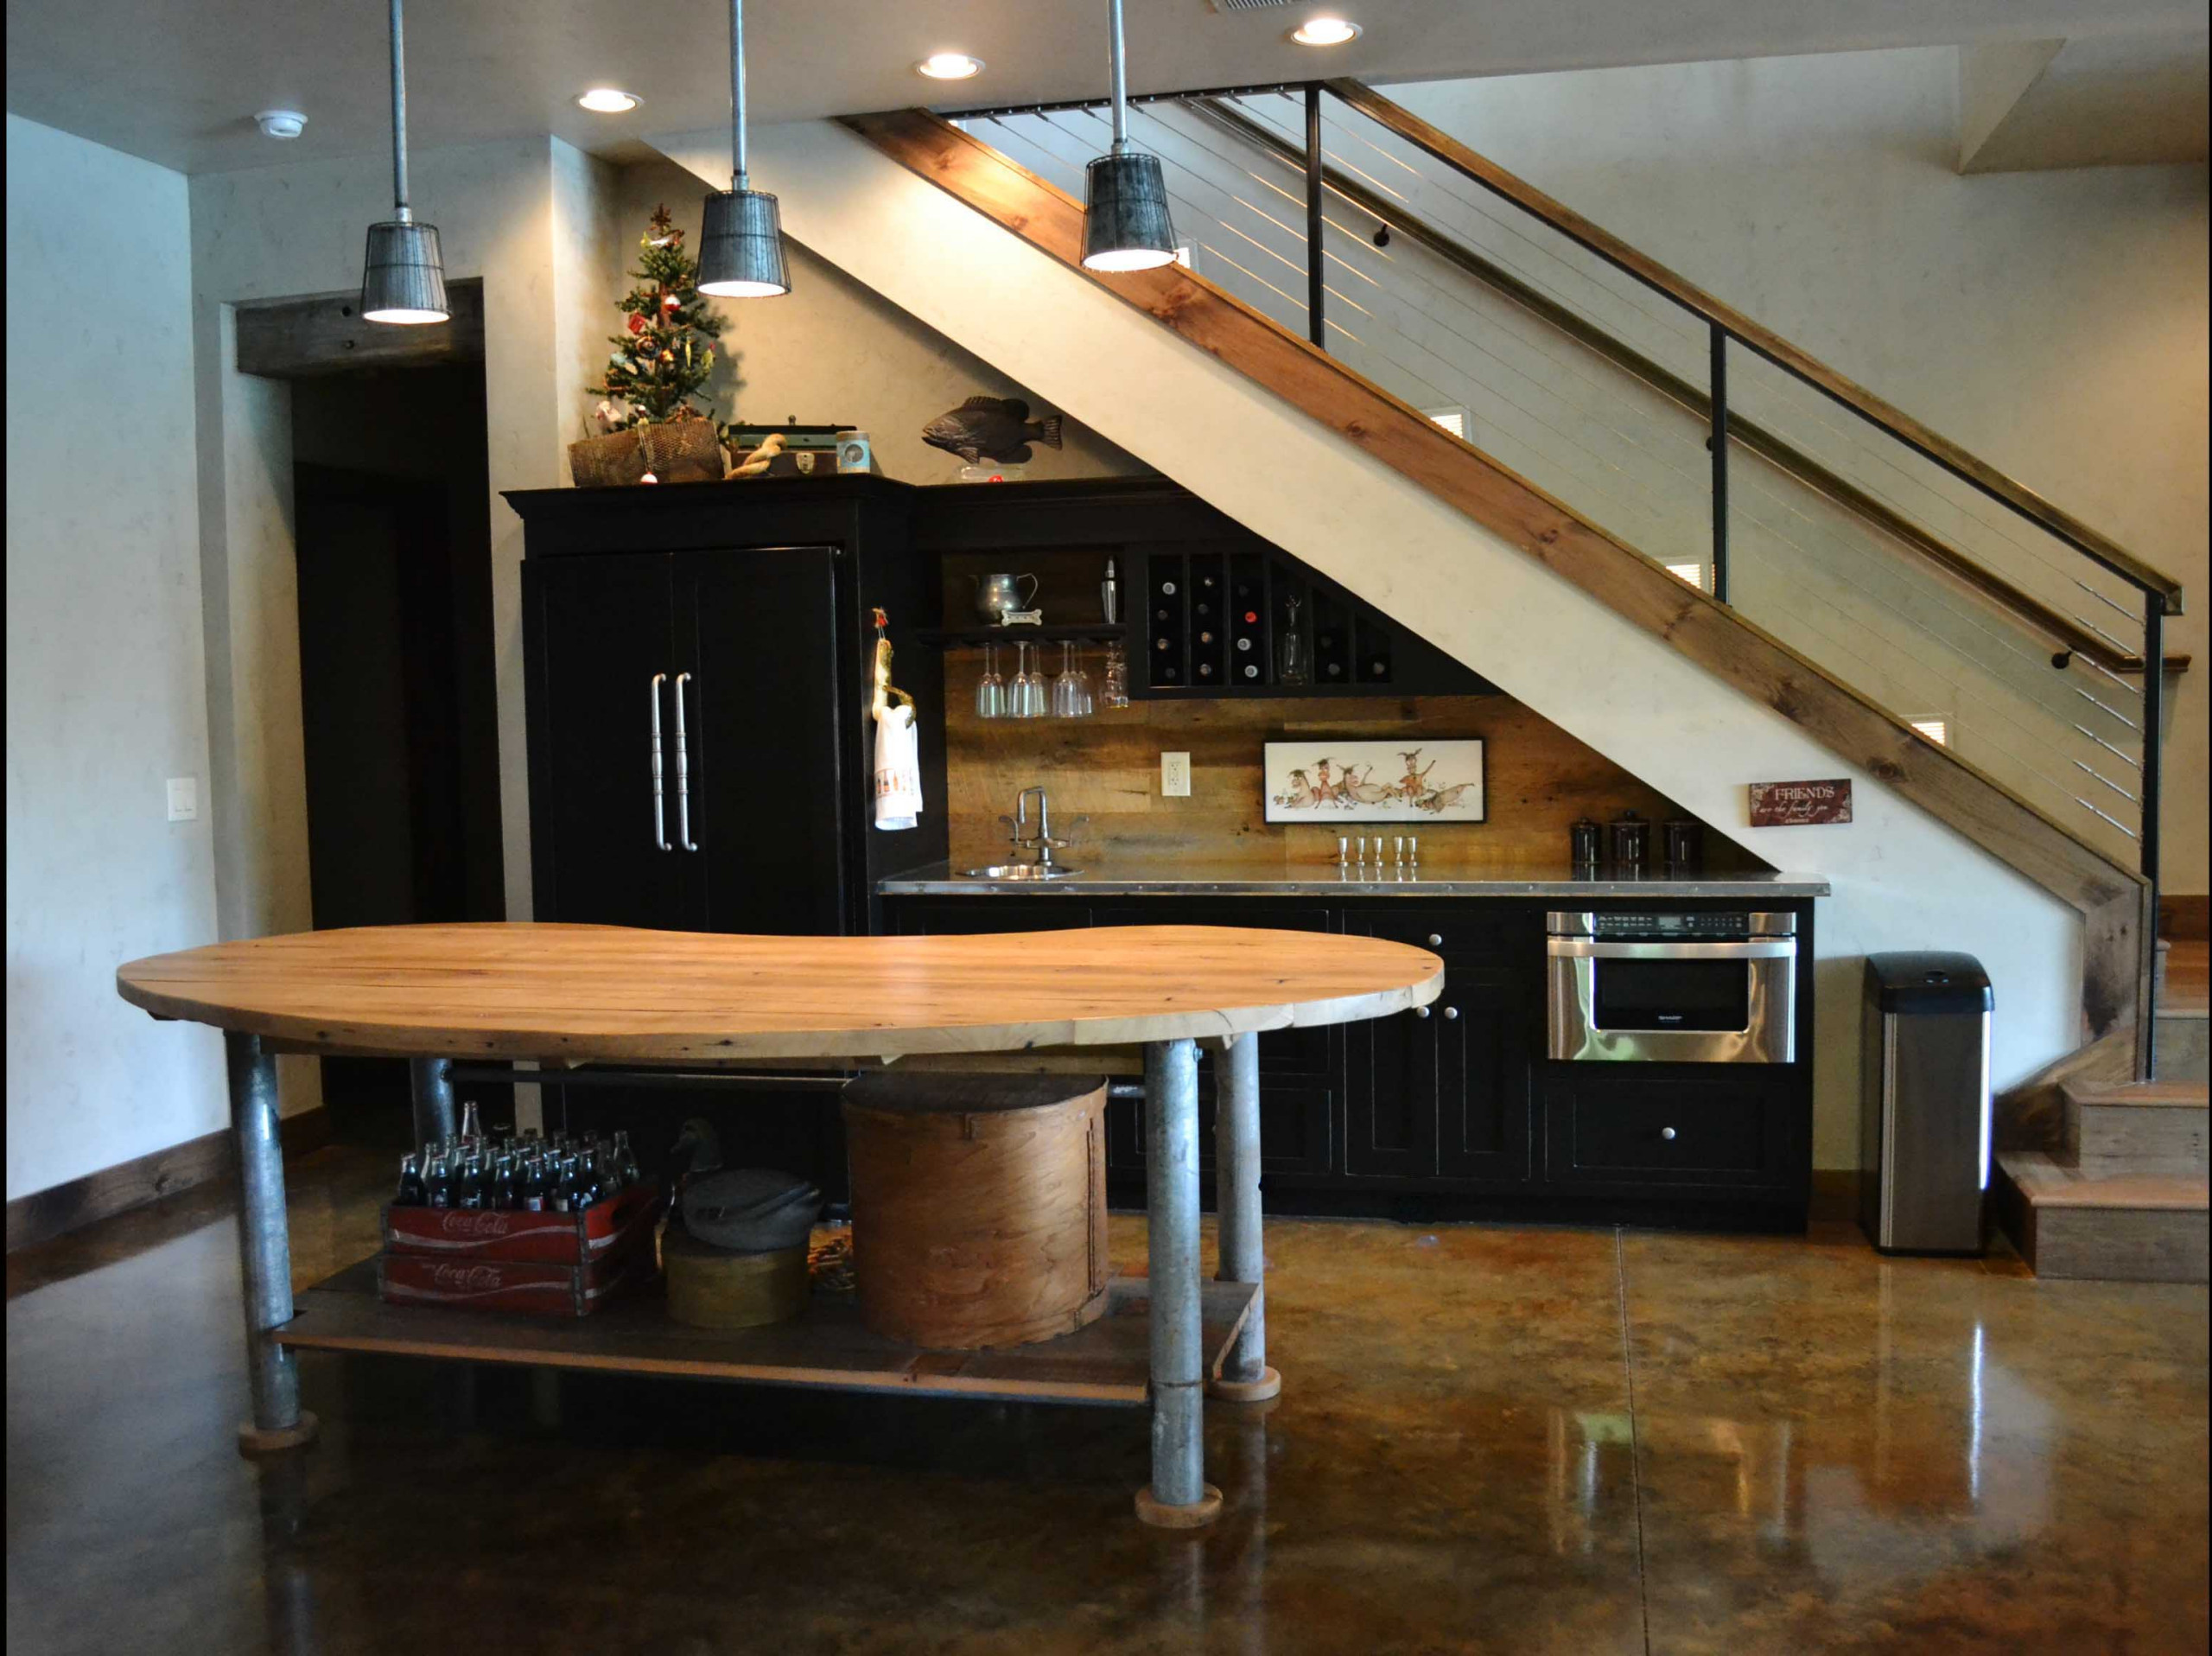 Второй этаж на кухне. Кухня под лестницей. Лестница на кухне. Барная стойка под лестницей. Кухня гостиная с лестницей.